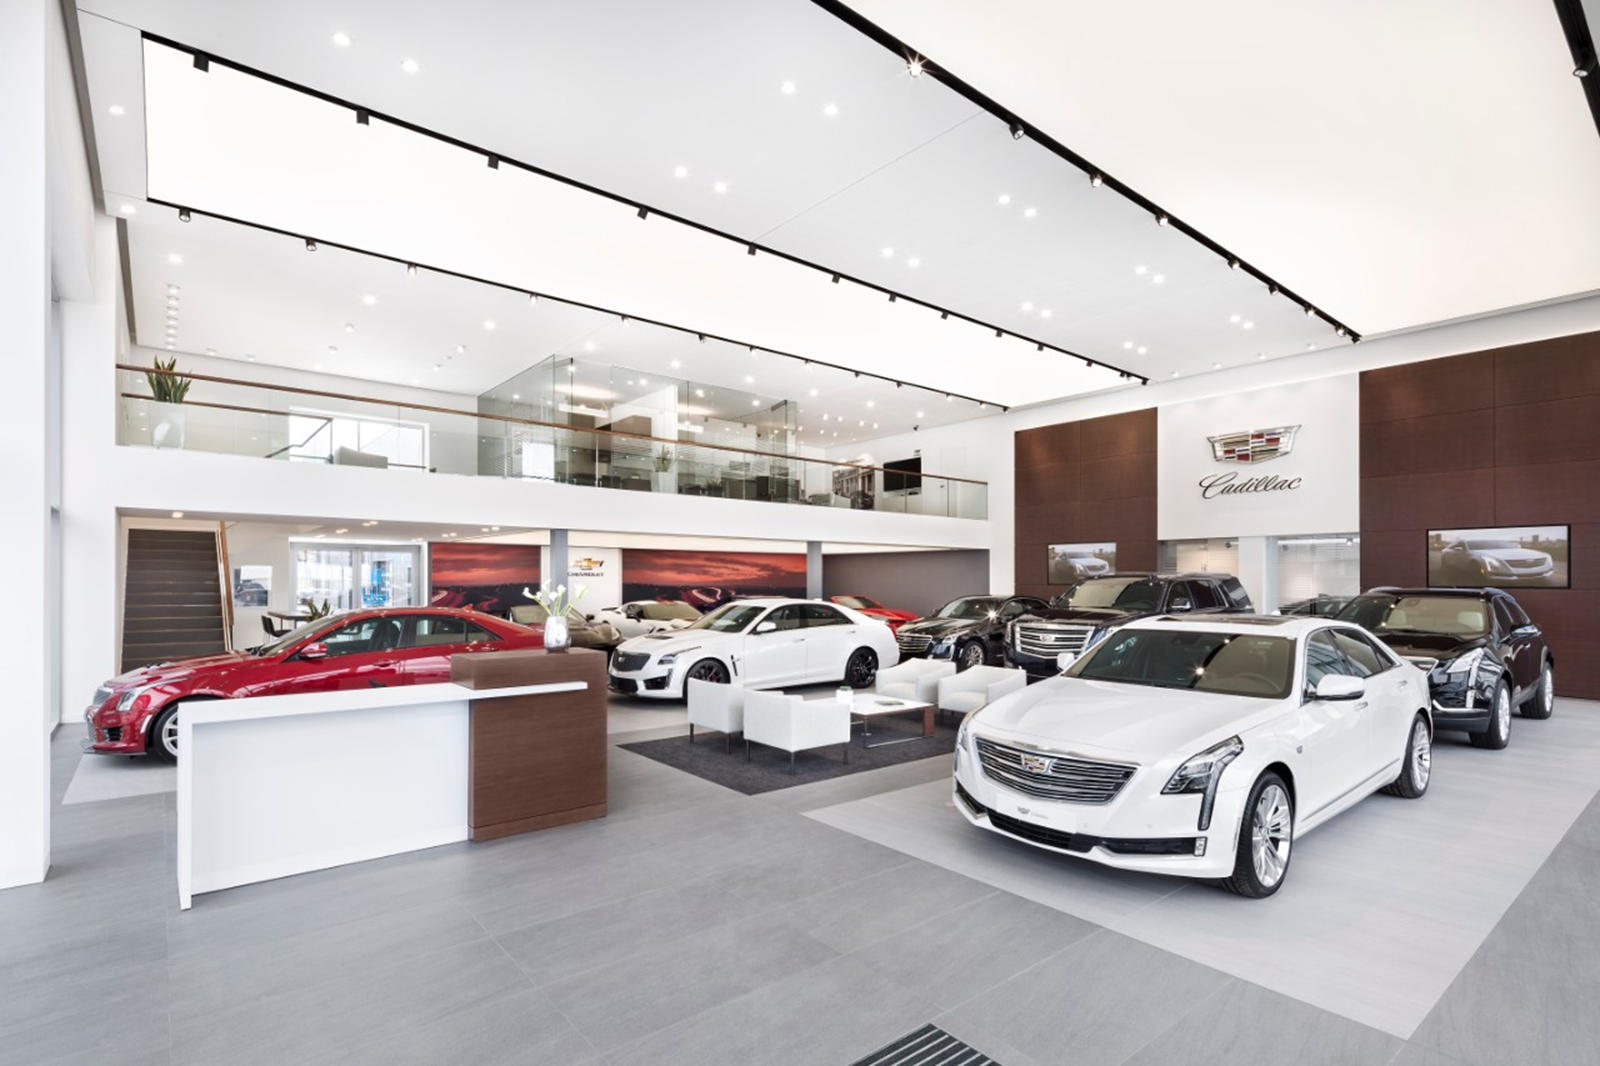 По состоянию на 1 января 2020 года у Cadillac было 882 дилерских центра только в США, в том числе 153 выставочных зала только для Cadillac без каких-либо других брендов General Motors. Для справки, Cadillac продает только около 150 000 автомобилей в 